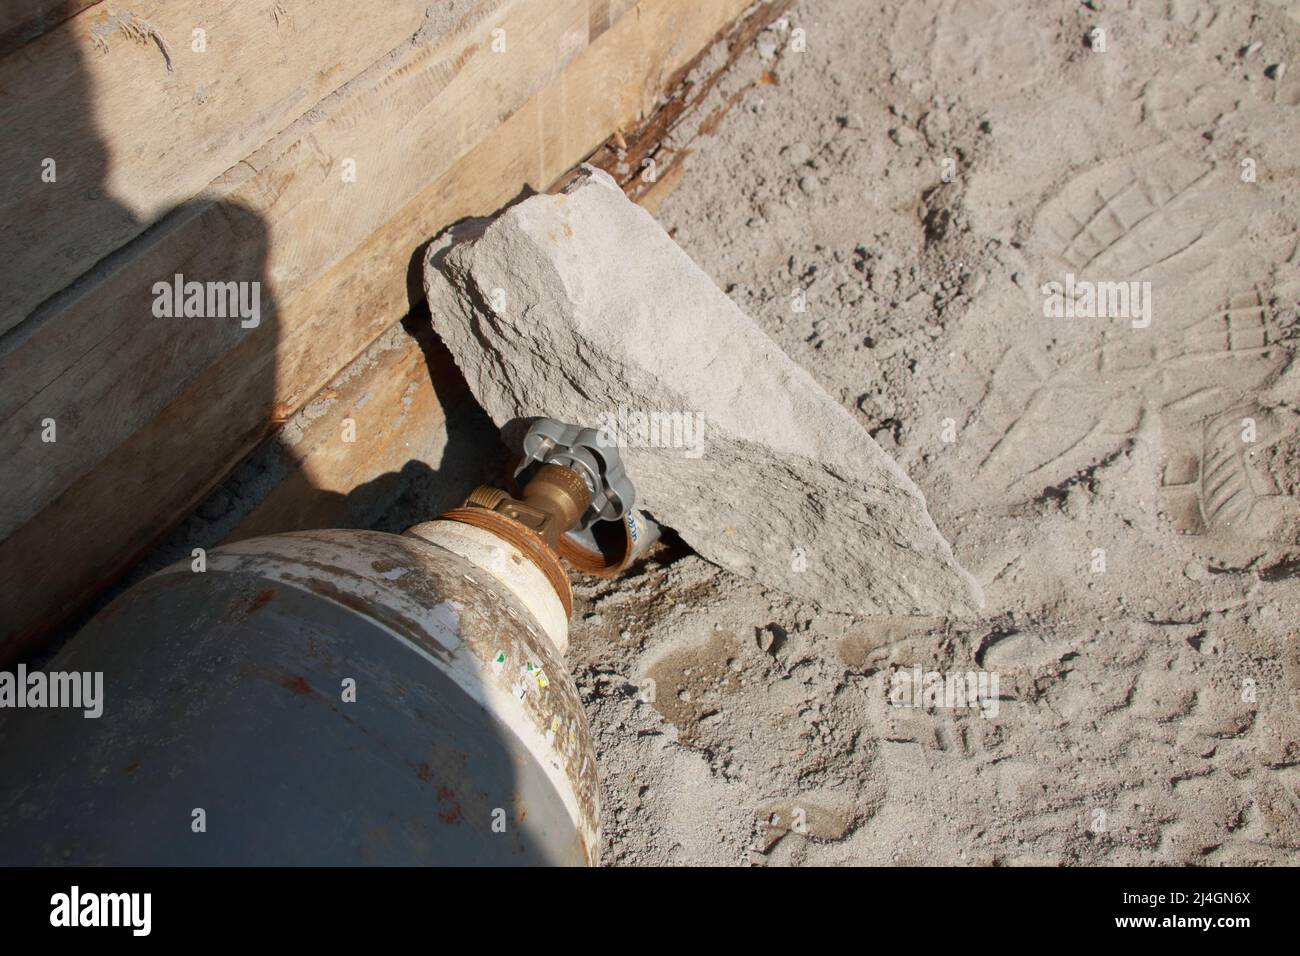 Une pierre est tombée sur une vanne du réservoir d'oxygène Banque D'Images